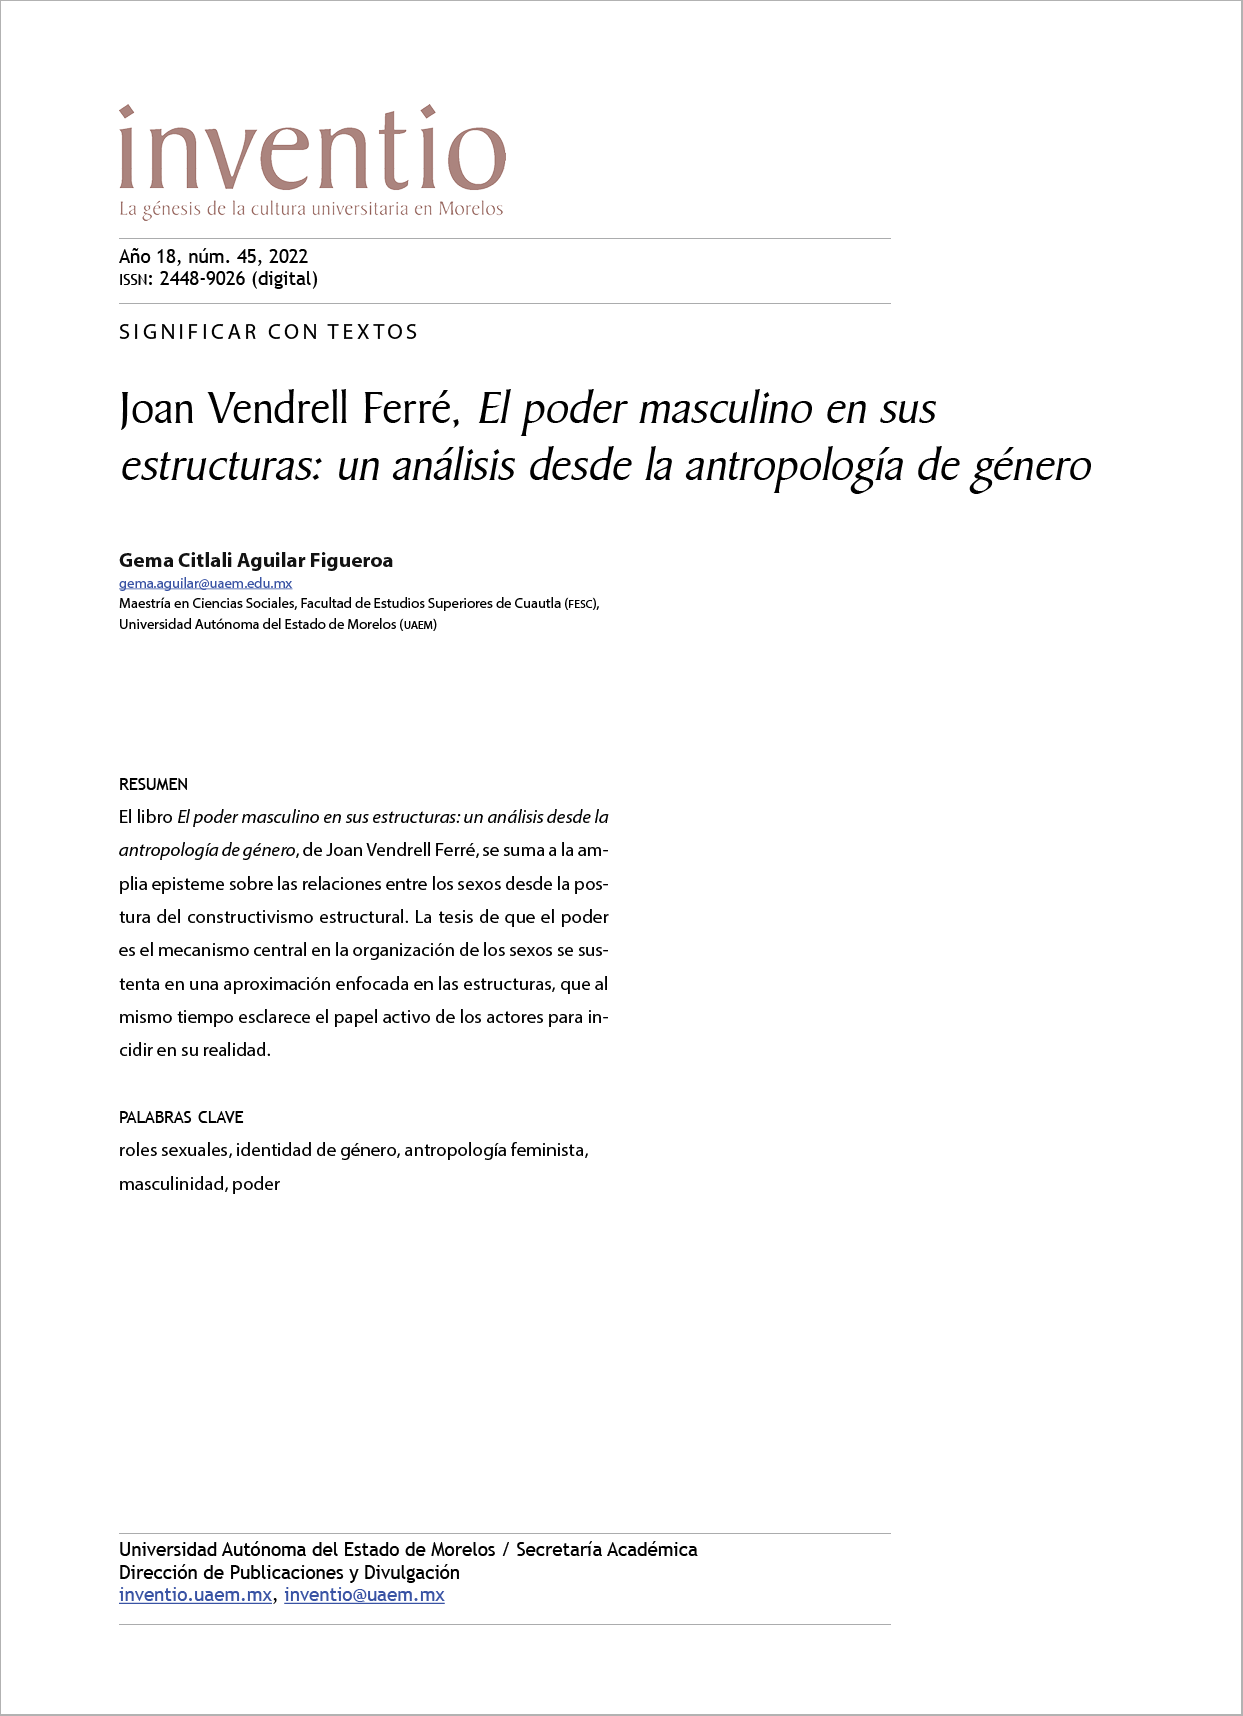 Joan Vendrell Ferré, El poder masculino en sus estructuras: un análisis desde la antropología de género